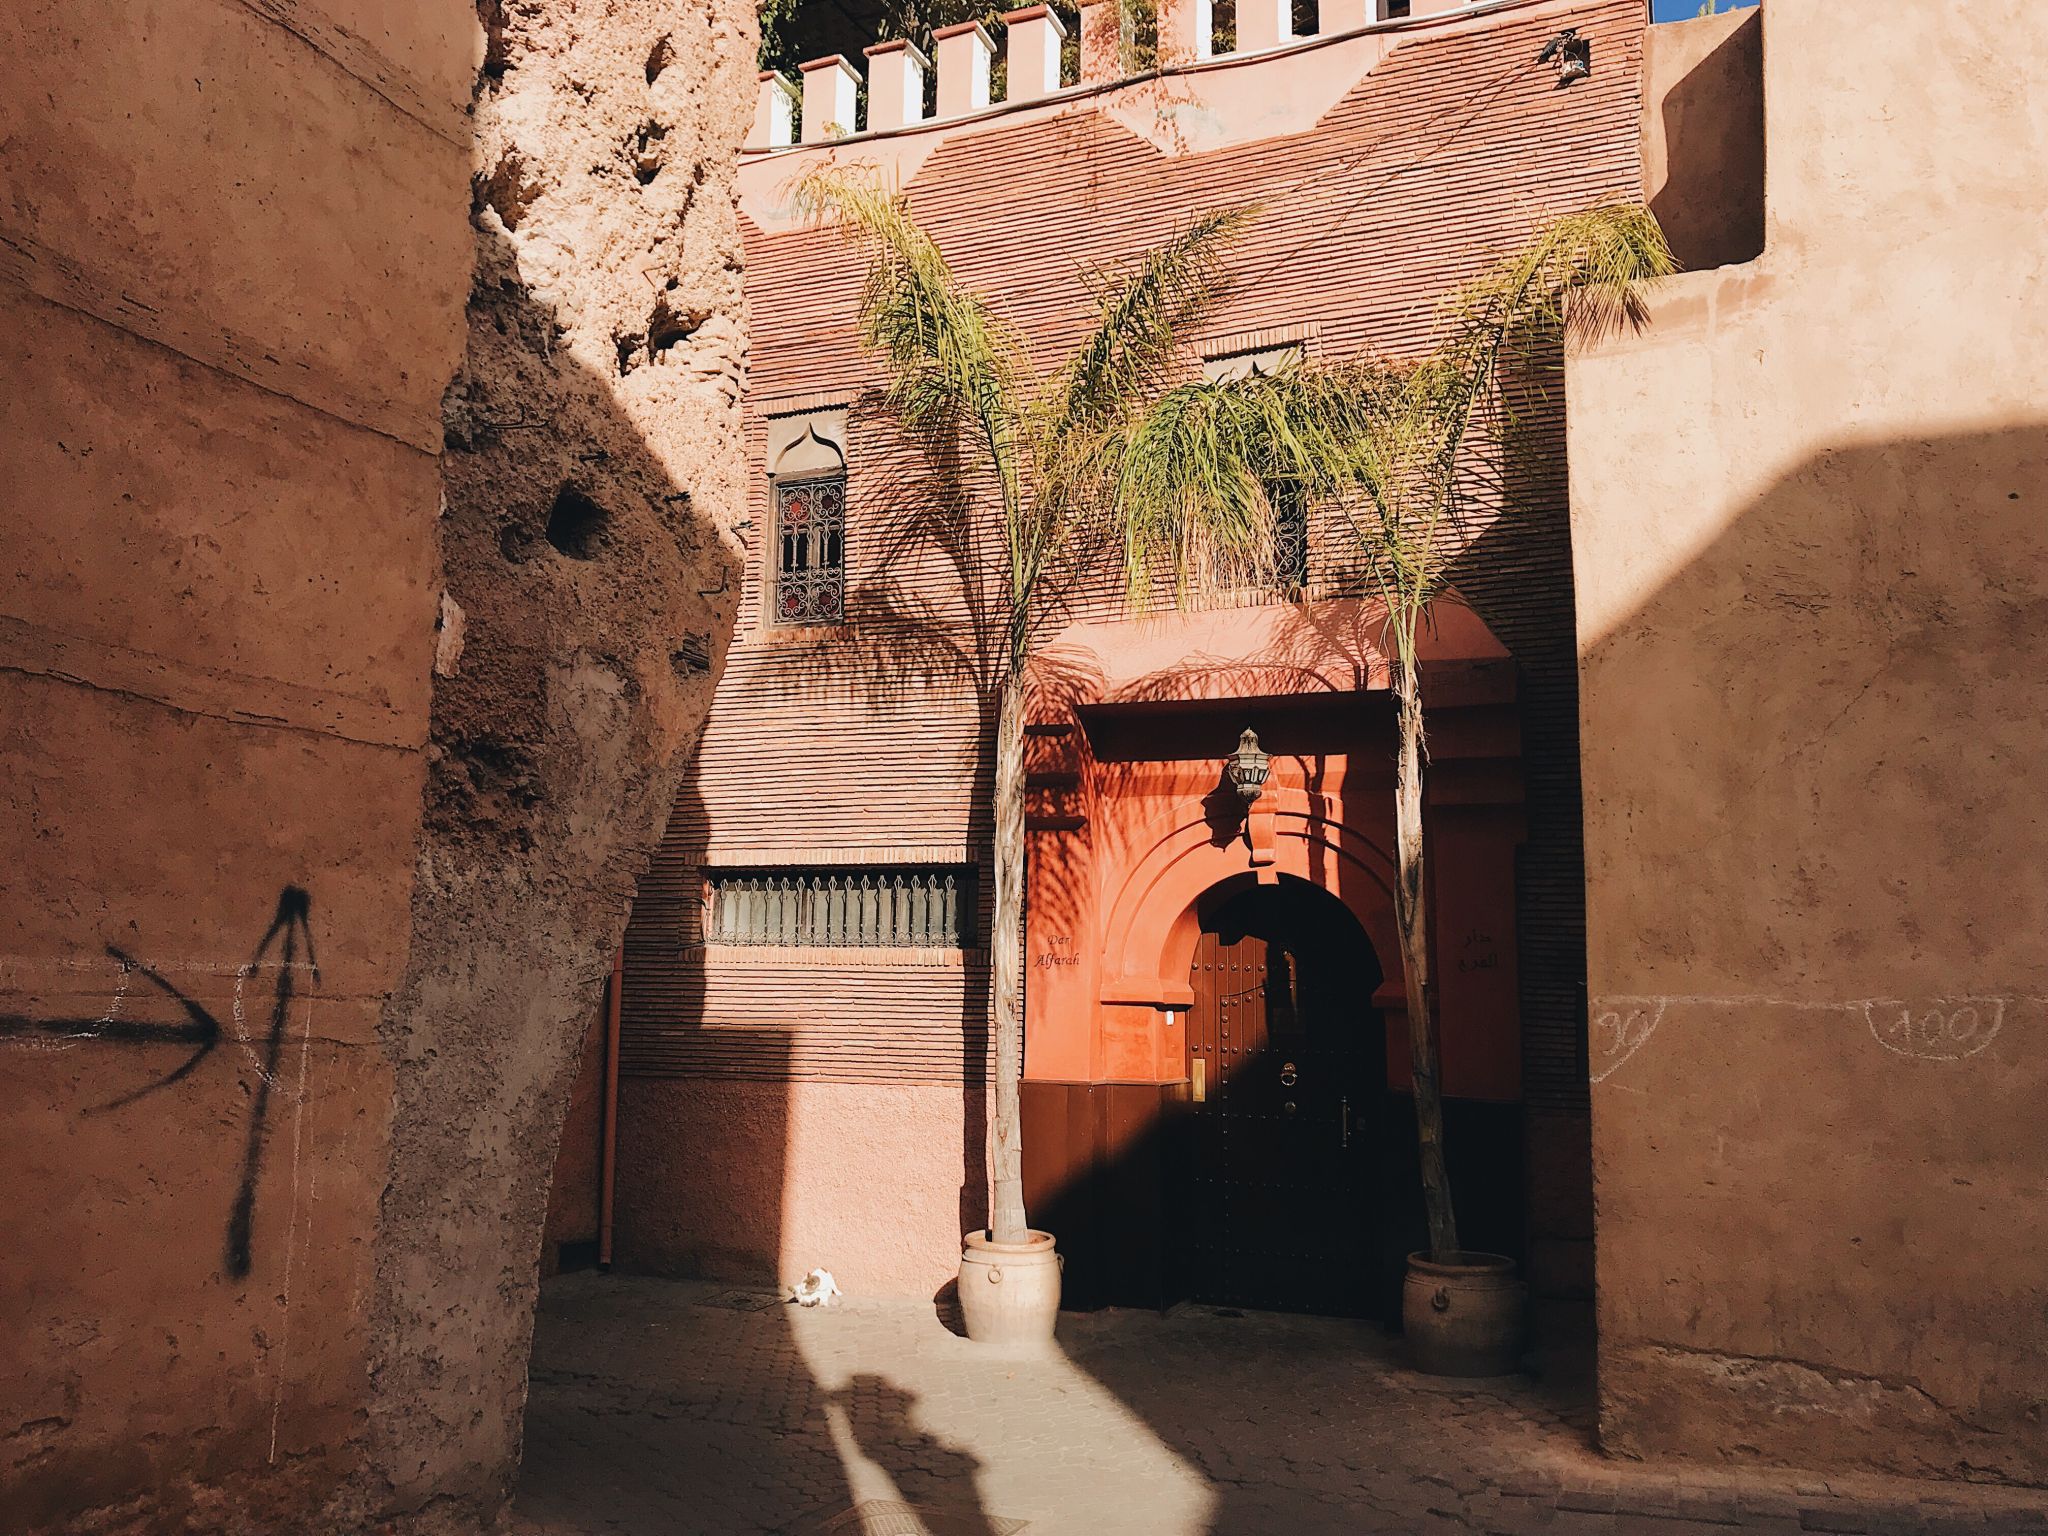 One Week In Morocco, Marrakech Medina